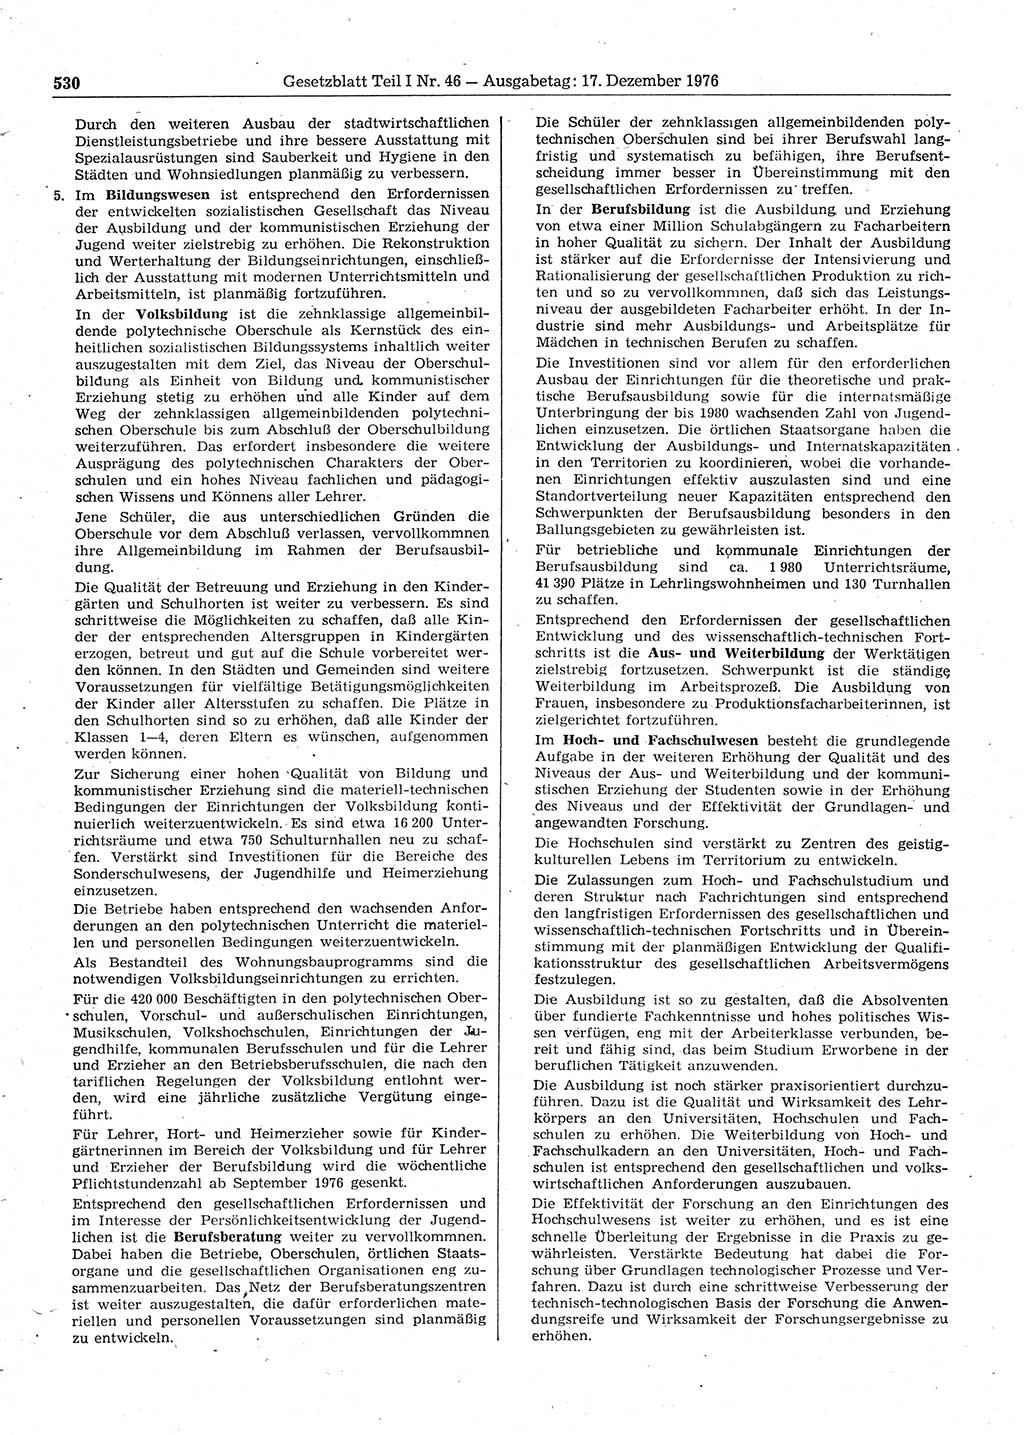 Gesetzblatt (GBl.) der Deutschen Demokratischen Republik (DDR) Teil Ⅰ 1976, Seite 530 (GBl. DDR Ⅰ 1976, S. 530)